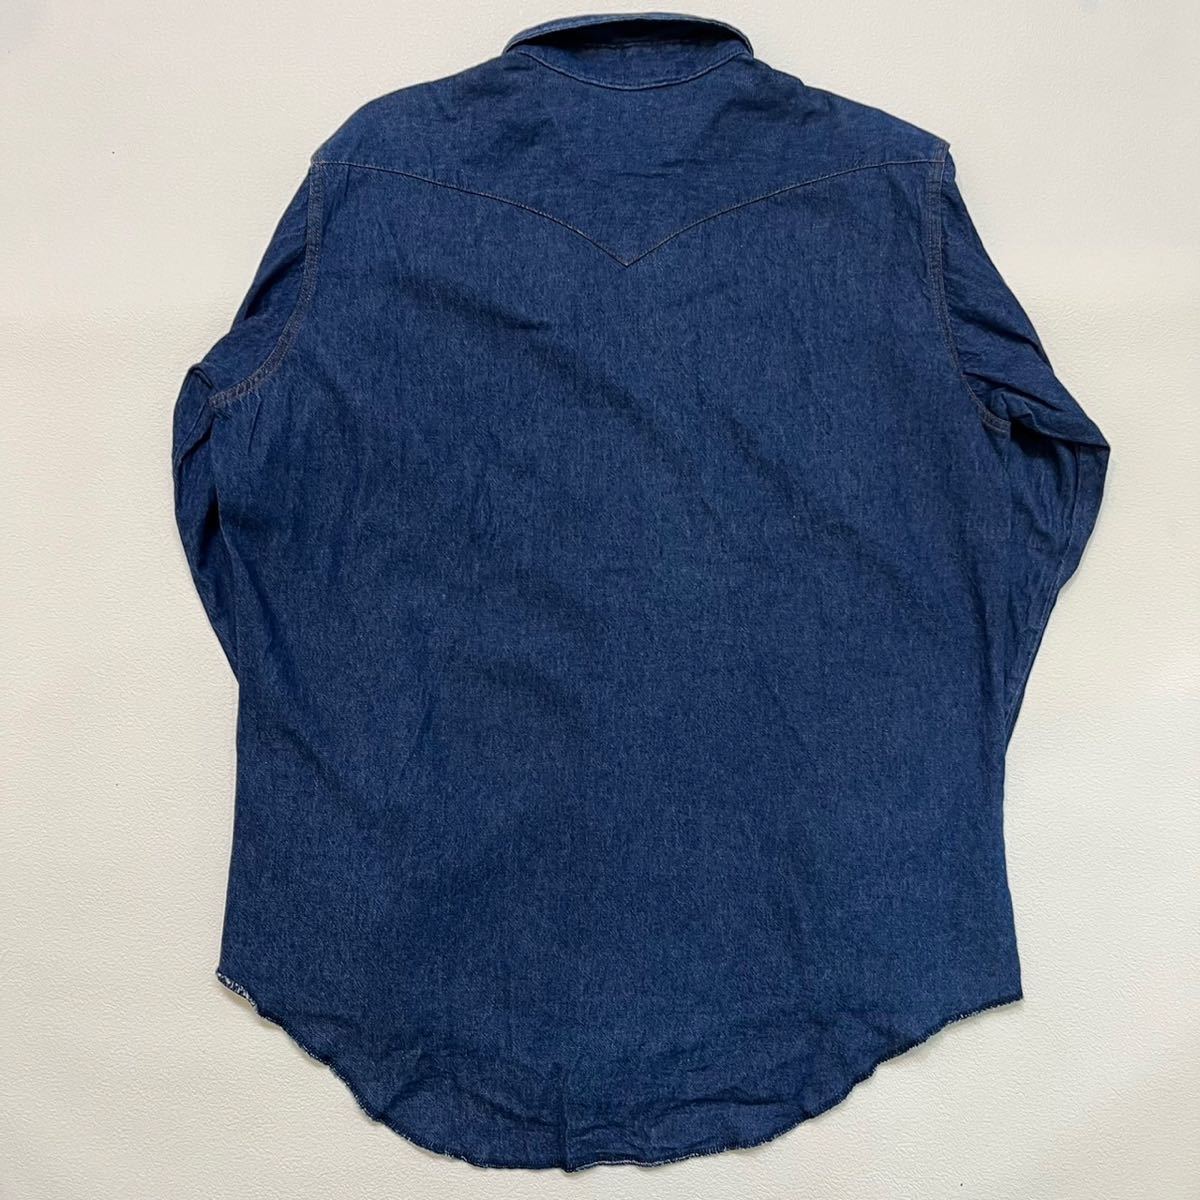 h 90 年代 アメリカ 製 Wrangler デニム ウエスタン シャツ 17 1/2 ラングラー vintage ビンテージ usa shirt L/S 90sの画像2